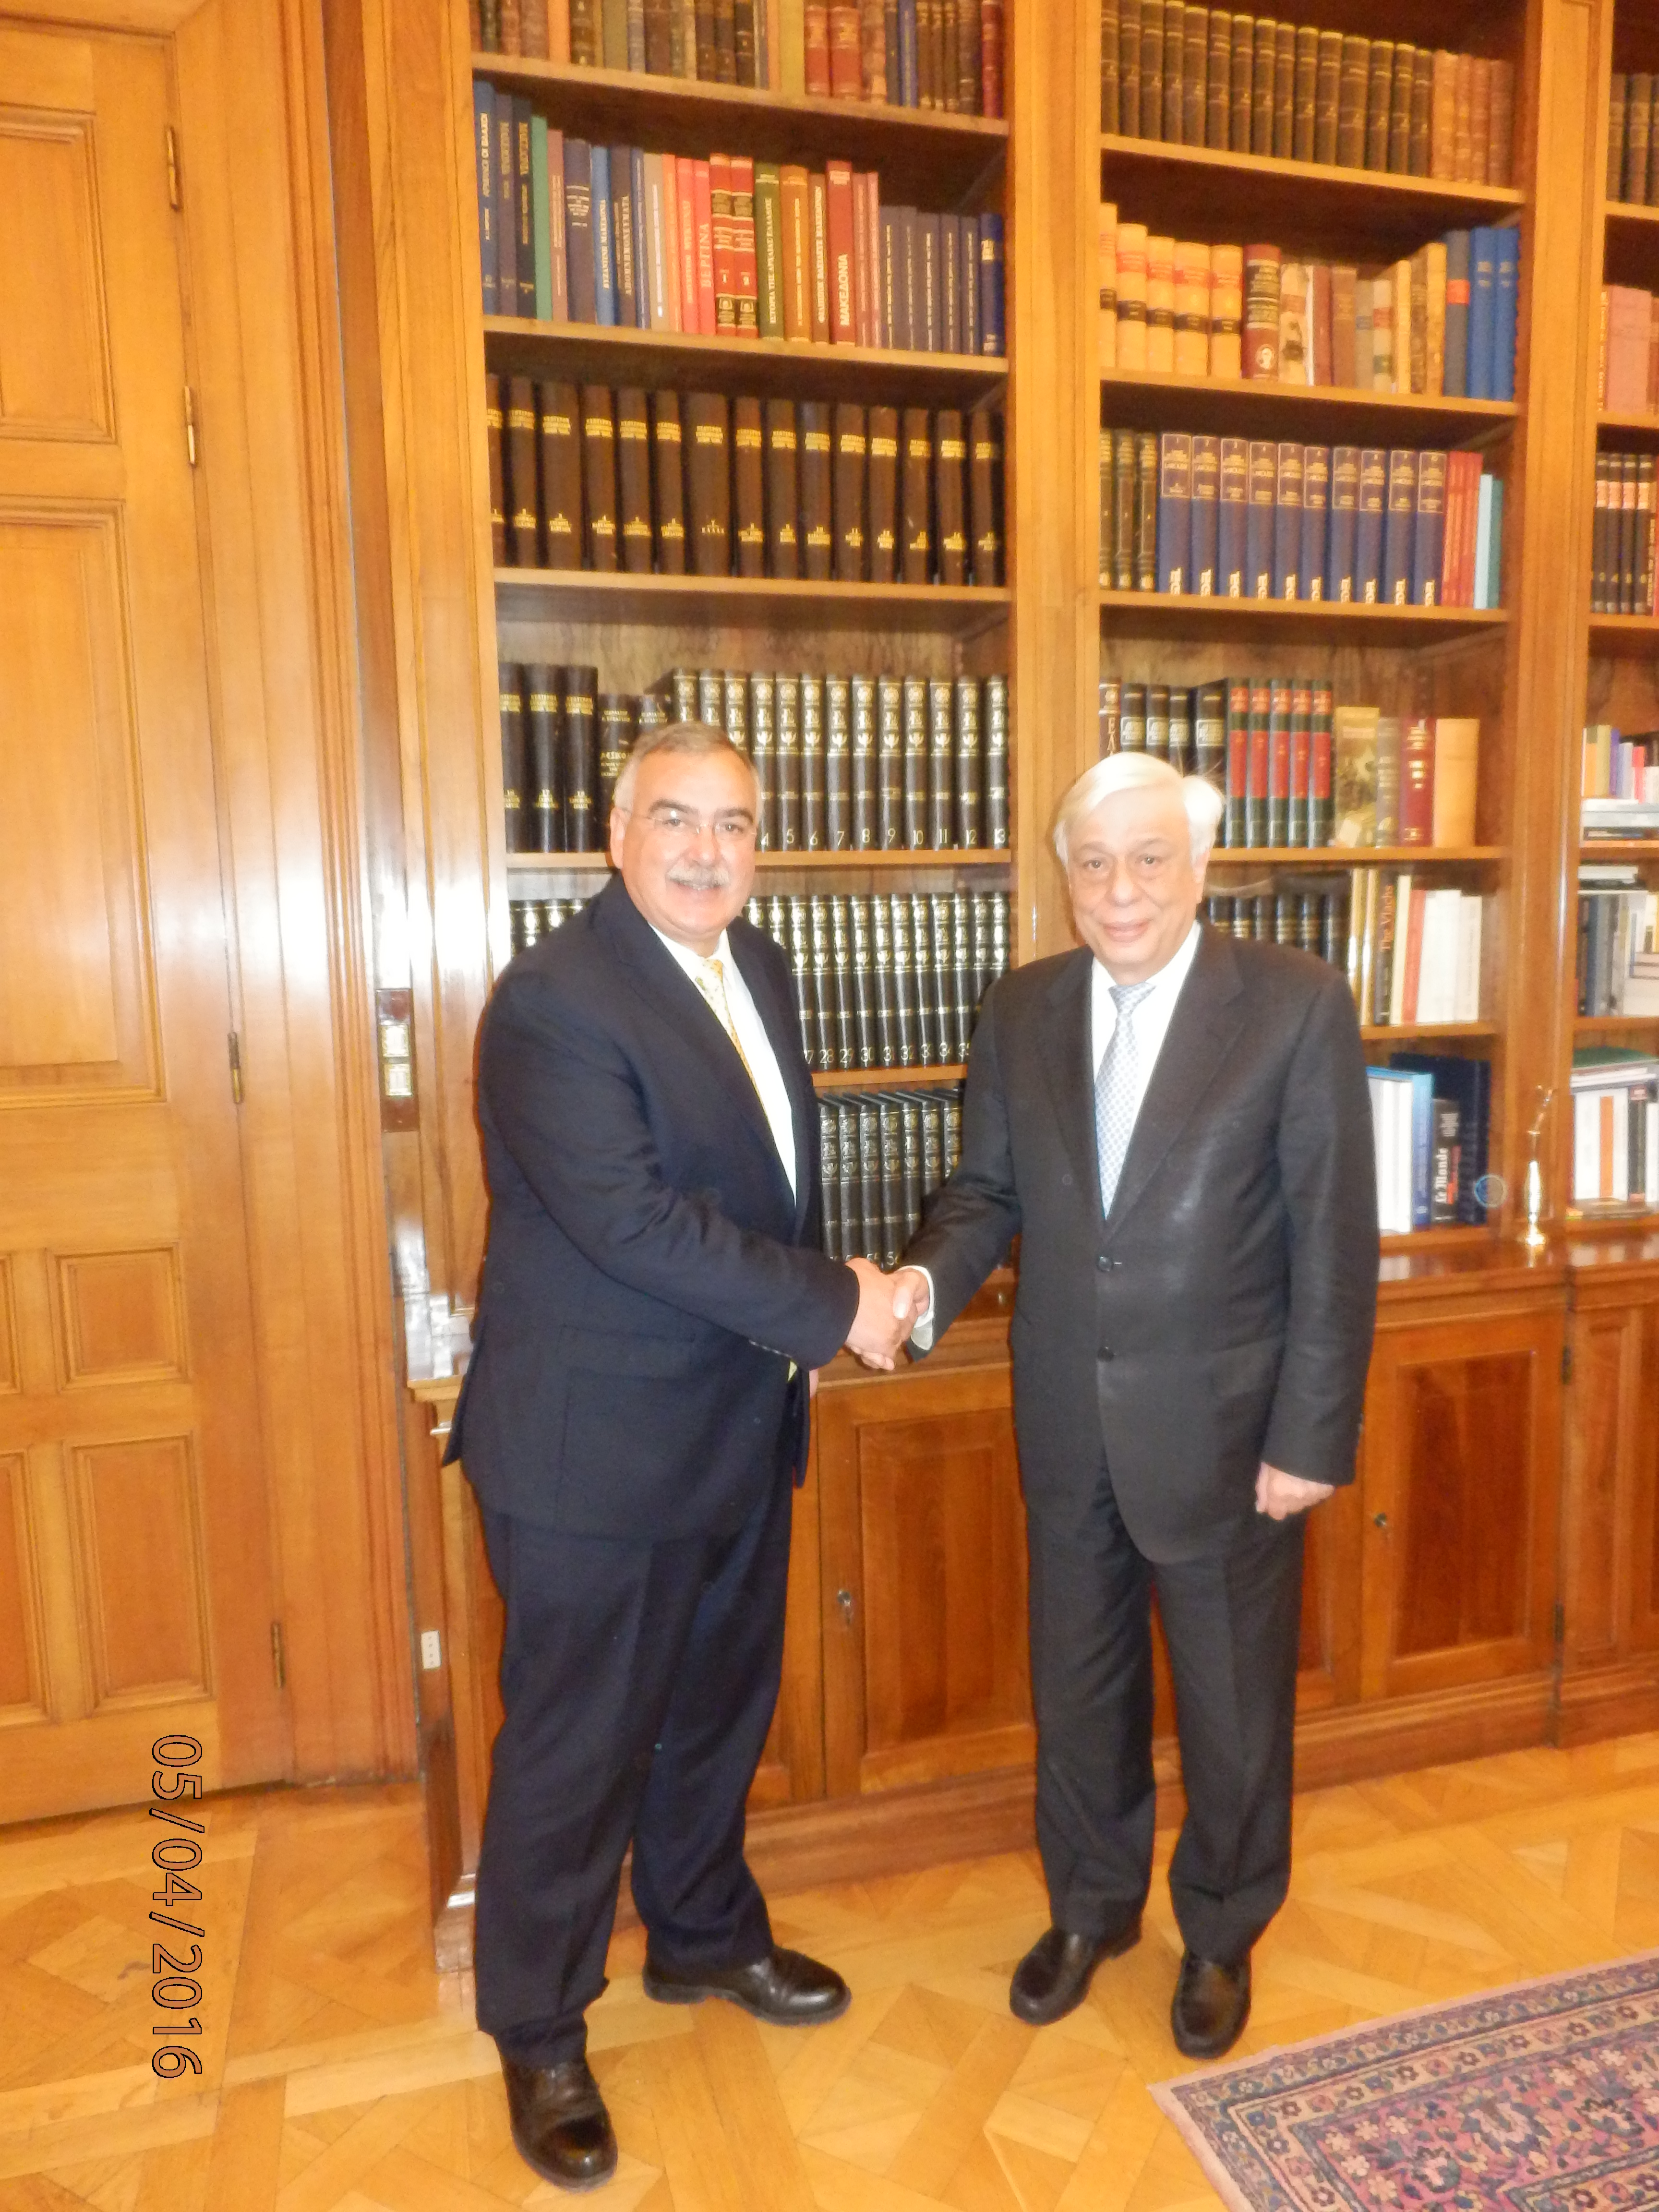 Ο Πρόεδρος Δημοκρατίας Προκόπης Παυλόπουλος με τον Δήμαρχο Καρπάθου Ηλία Λάμπρο στο Προεδρικό Μέγαρο.